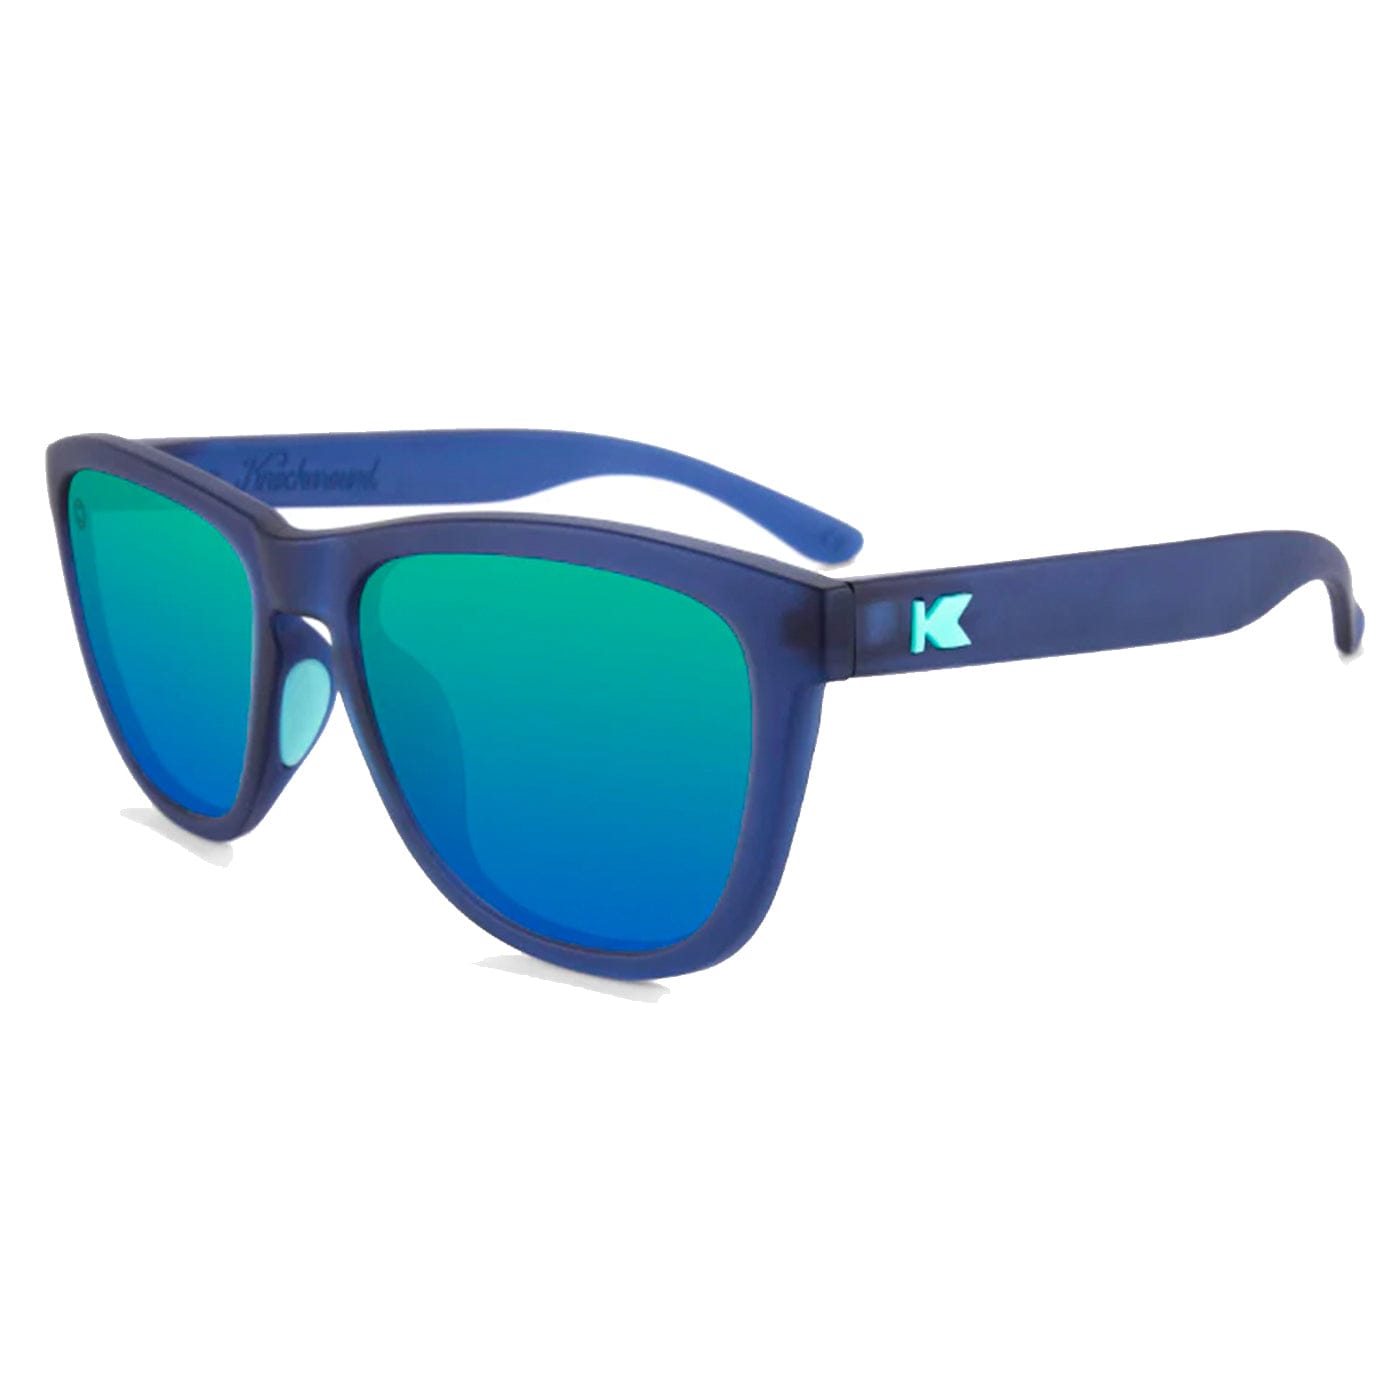 Knockaround Sunglasses Aquamarine / Fuchsia Premium Sport XMiles